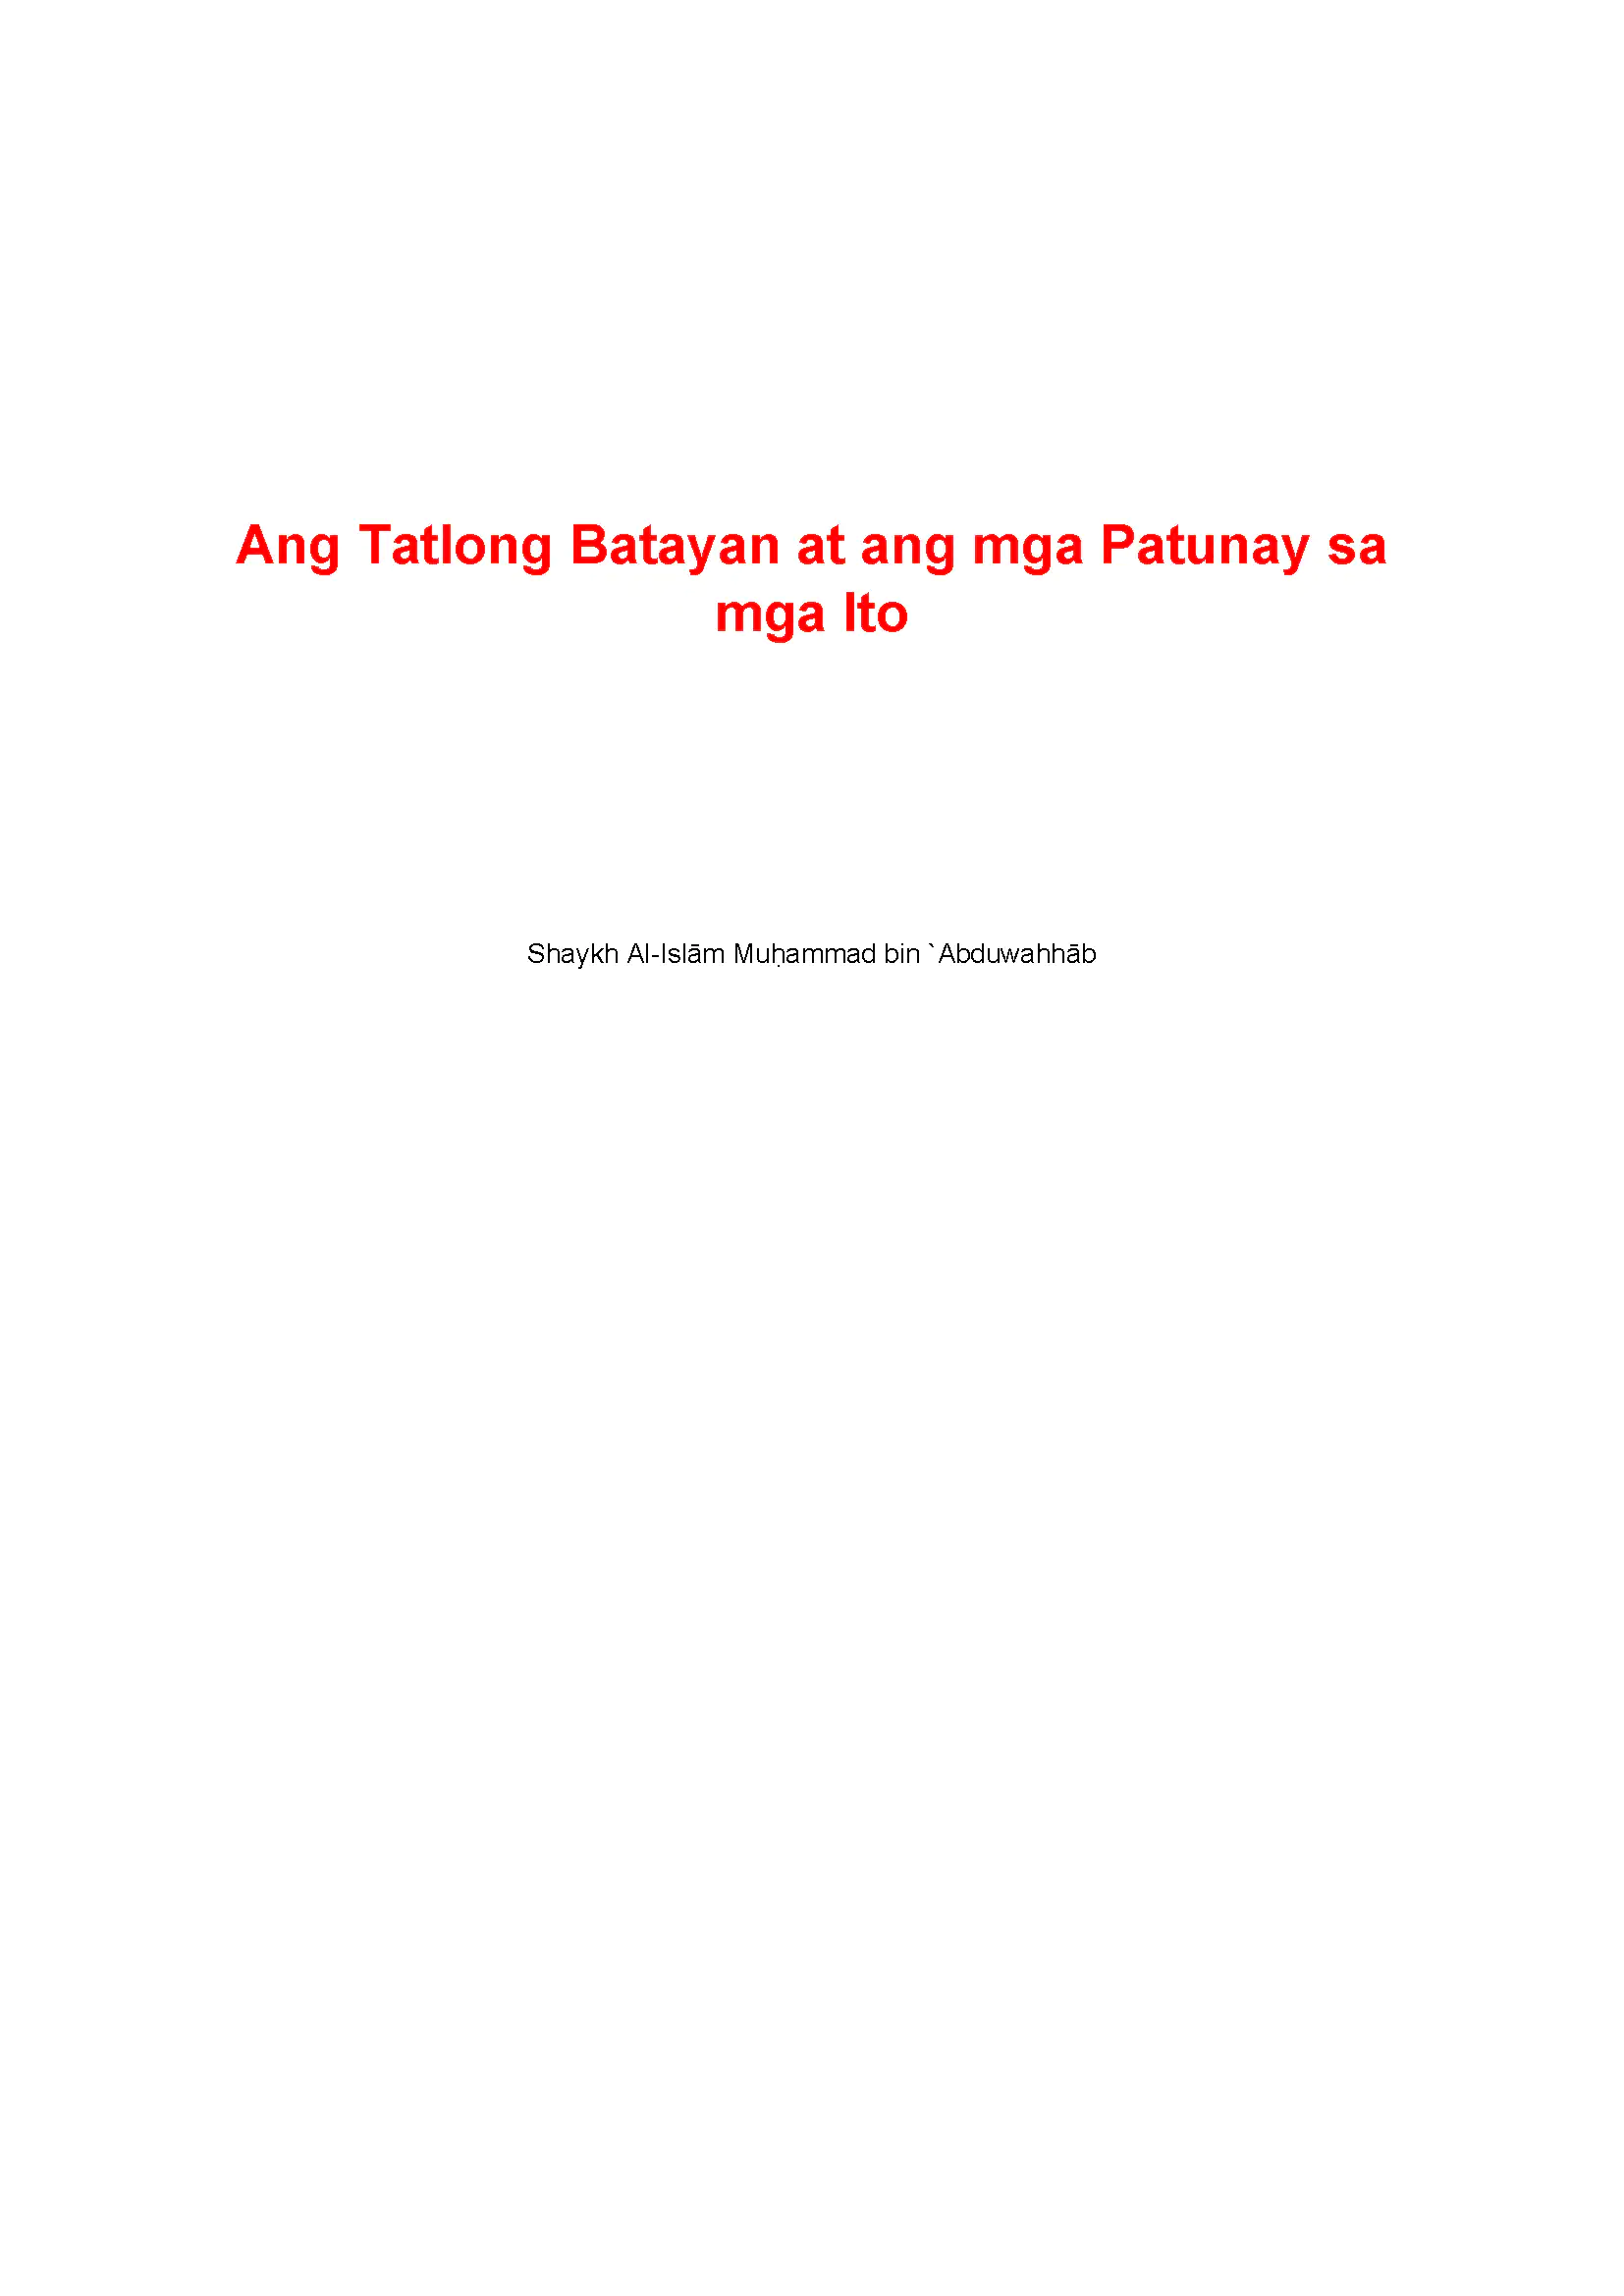 Ang Tatlong Batayan at ang mga Patunay sa mga Ito